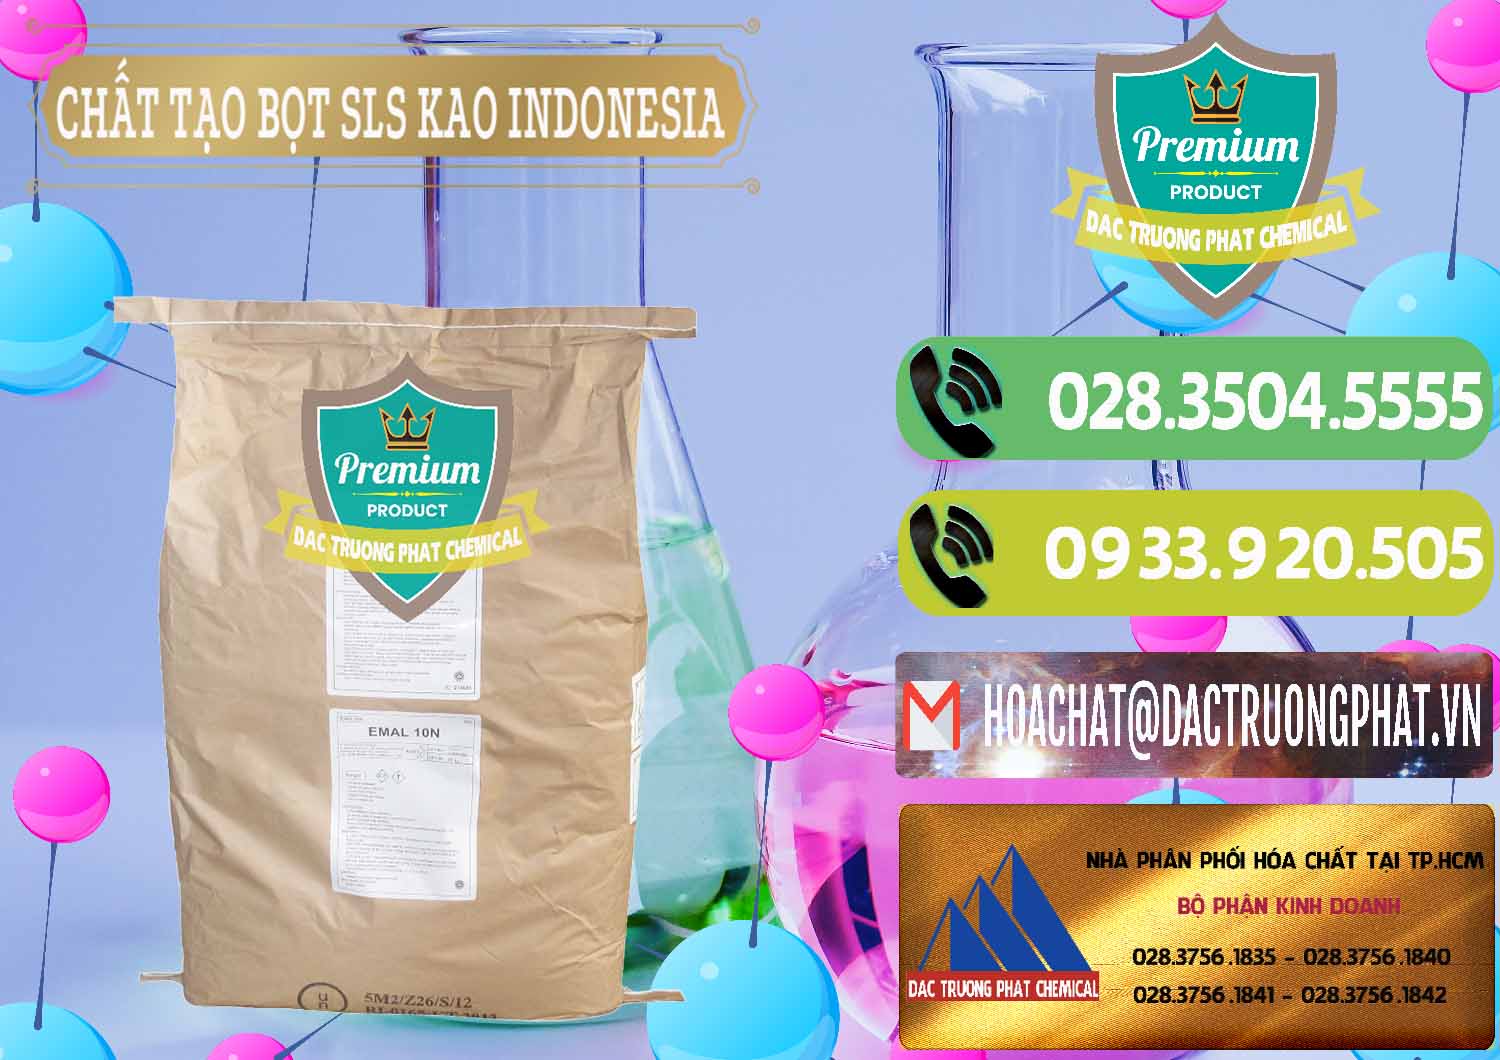 Đơn vị bán & cung ứng Chất Tạo Bọt SLS - Sodium Lauryl Sulfate EMAL 10N KAO Indonesia - 0047 - Công ty nhập khẩu & phân phối hóa chất tại TP.HCM - hoachatmientay.vn